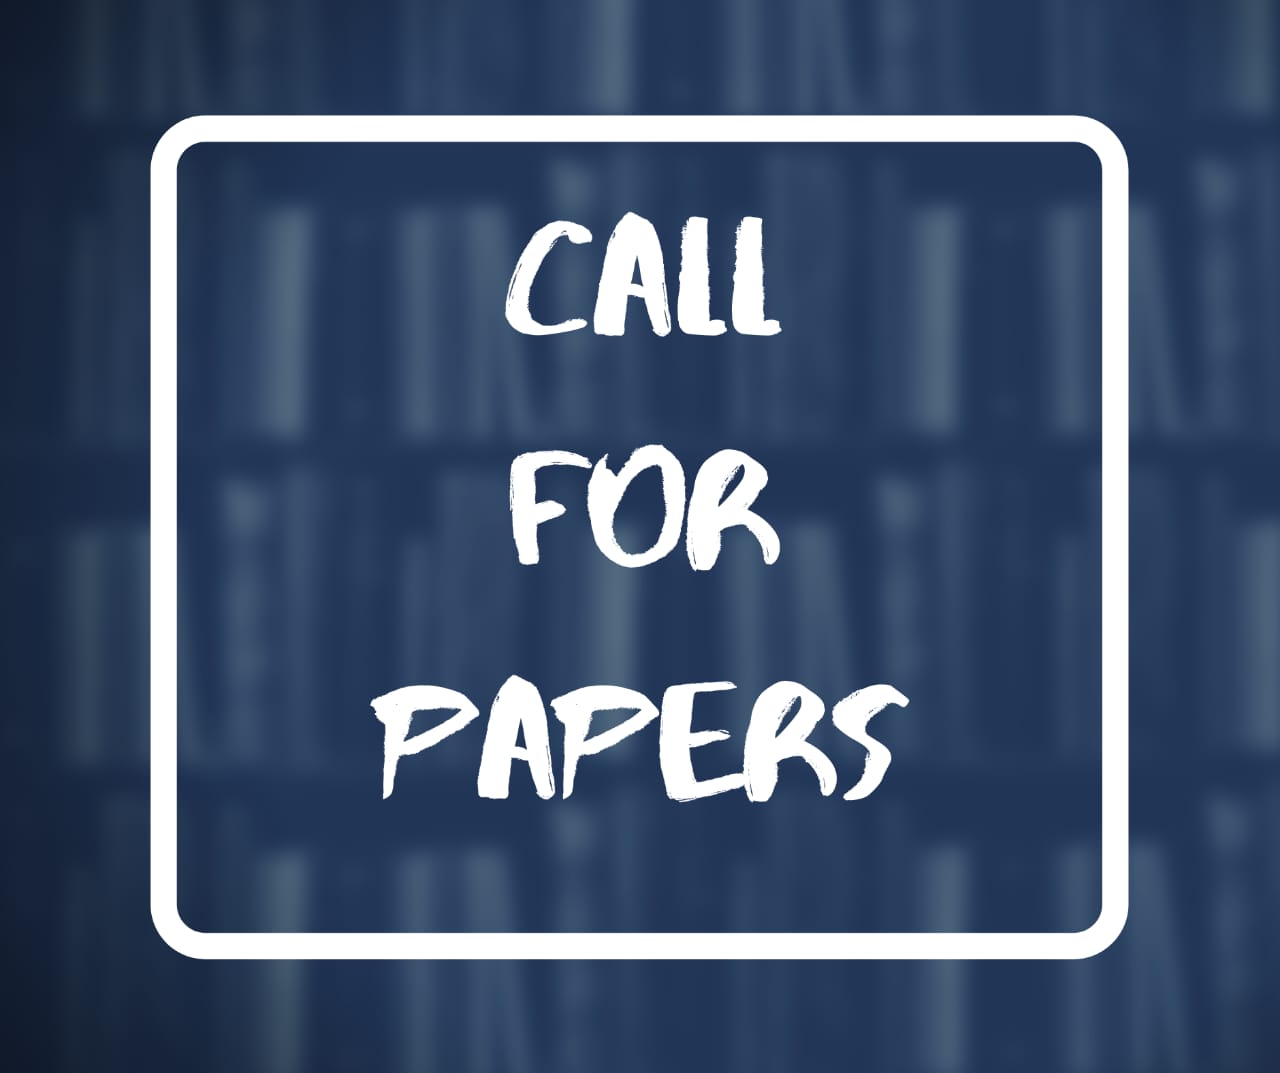 Call for papers: Bennett Journal of Legal Studies (BJLS) [Volume 4; Feb 2023]: Deadline-Sept 30 